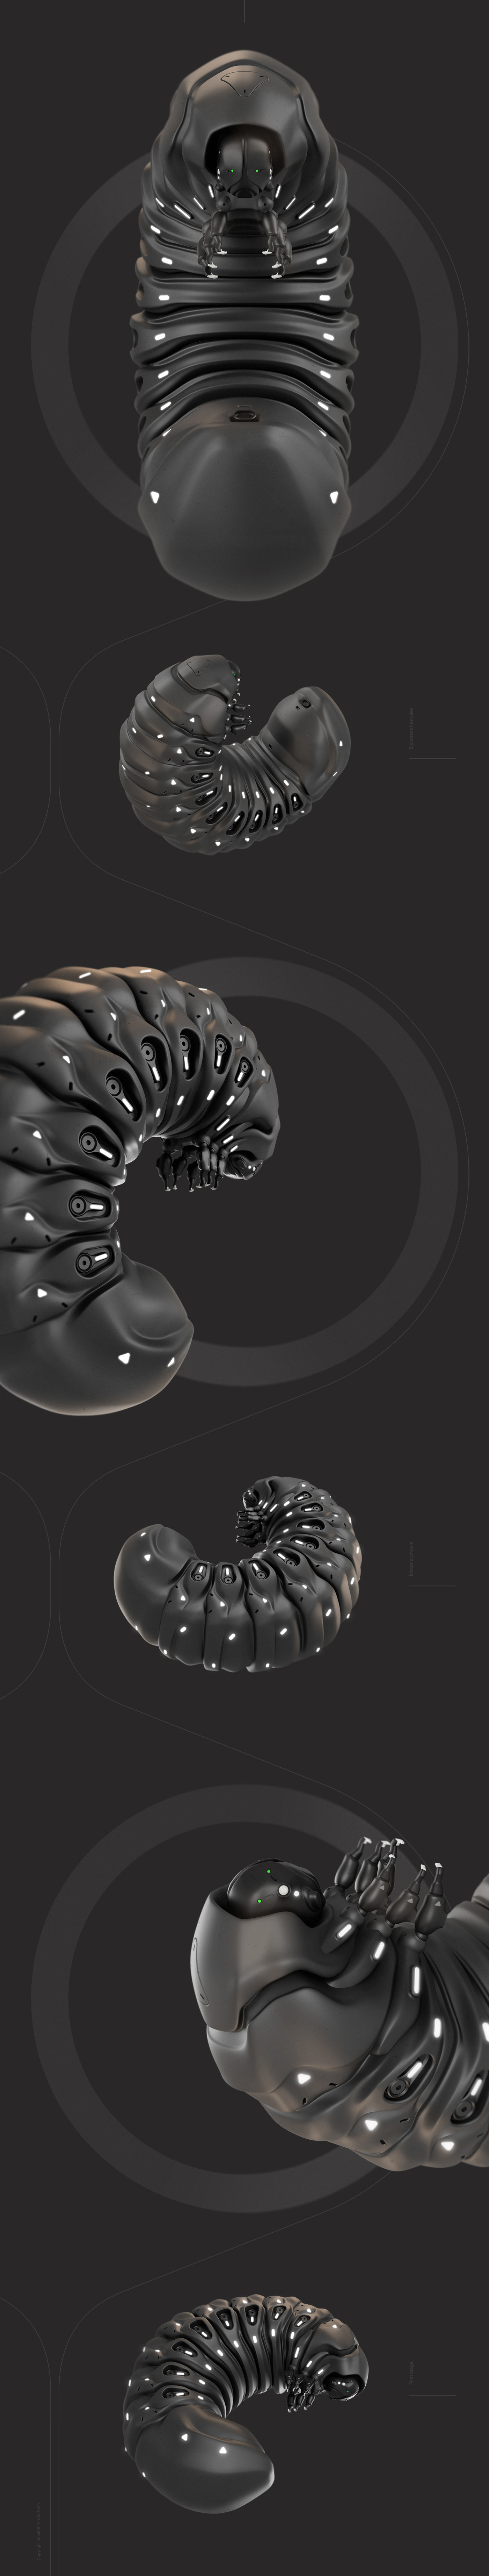 Dynasteshercules HardSurface Conceptdesign robotdesign   mecha organism concept Caterpillar Render